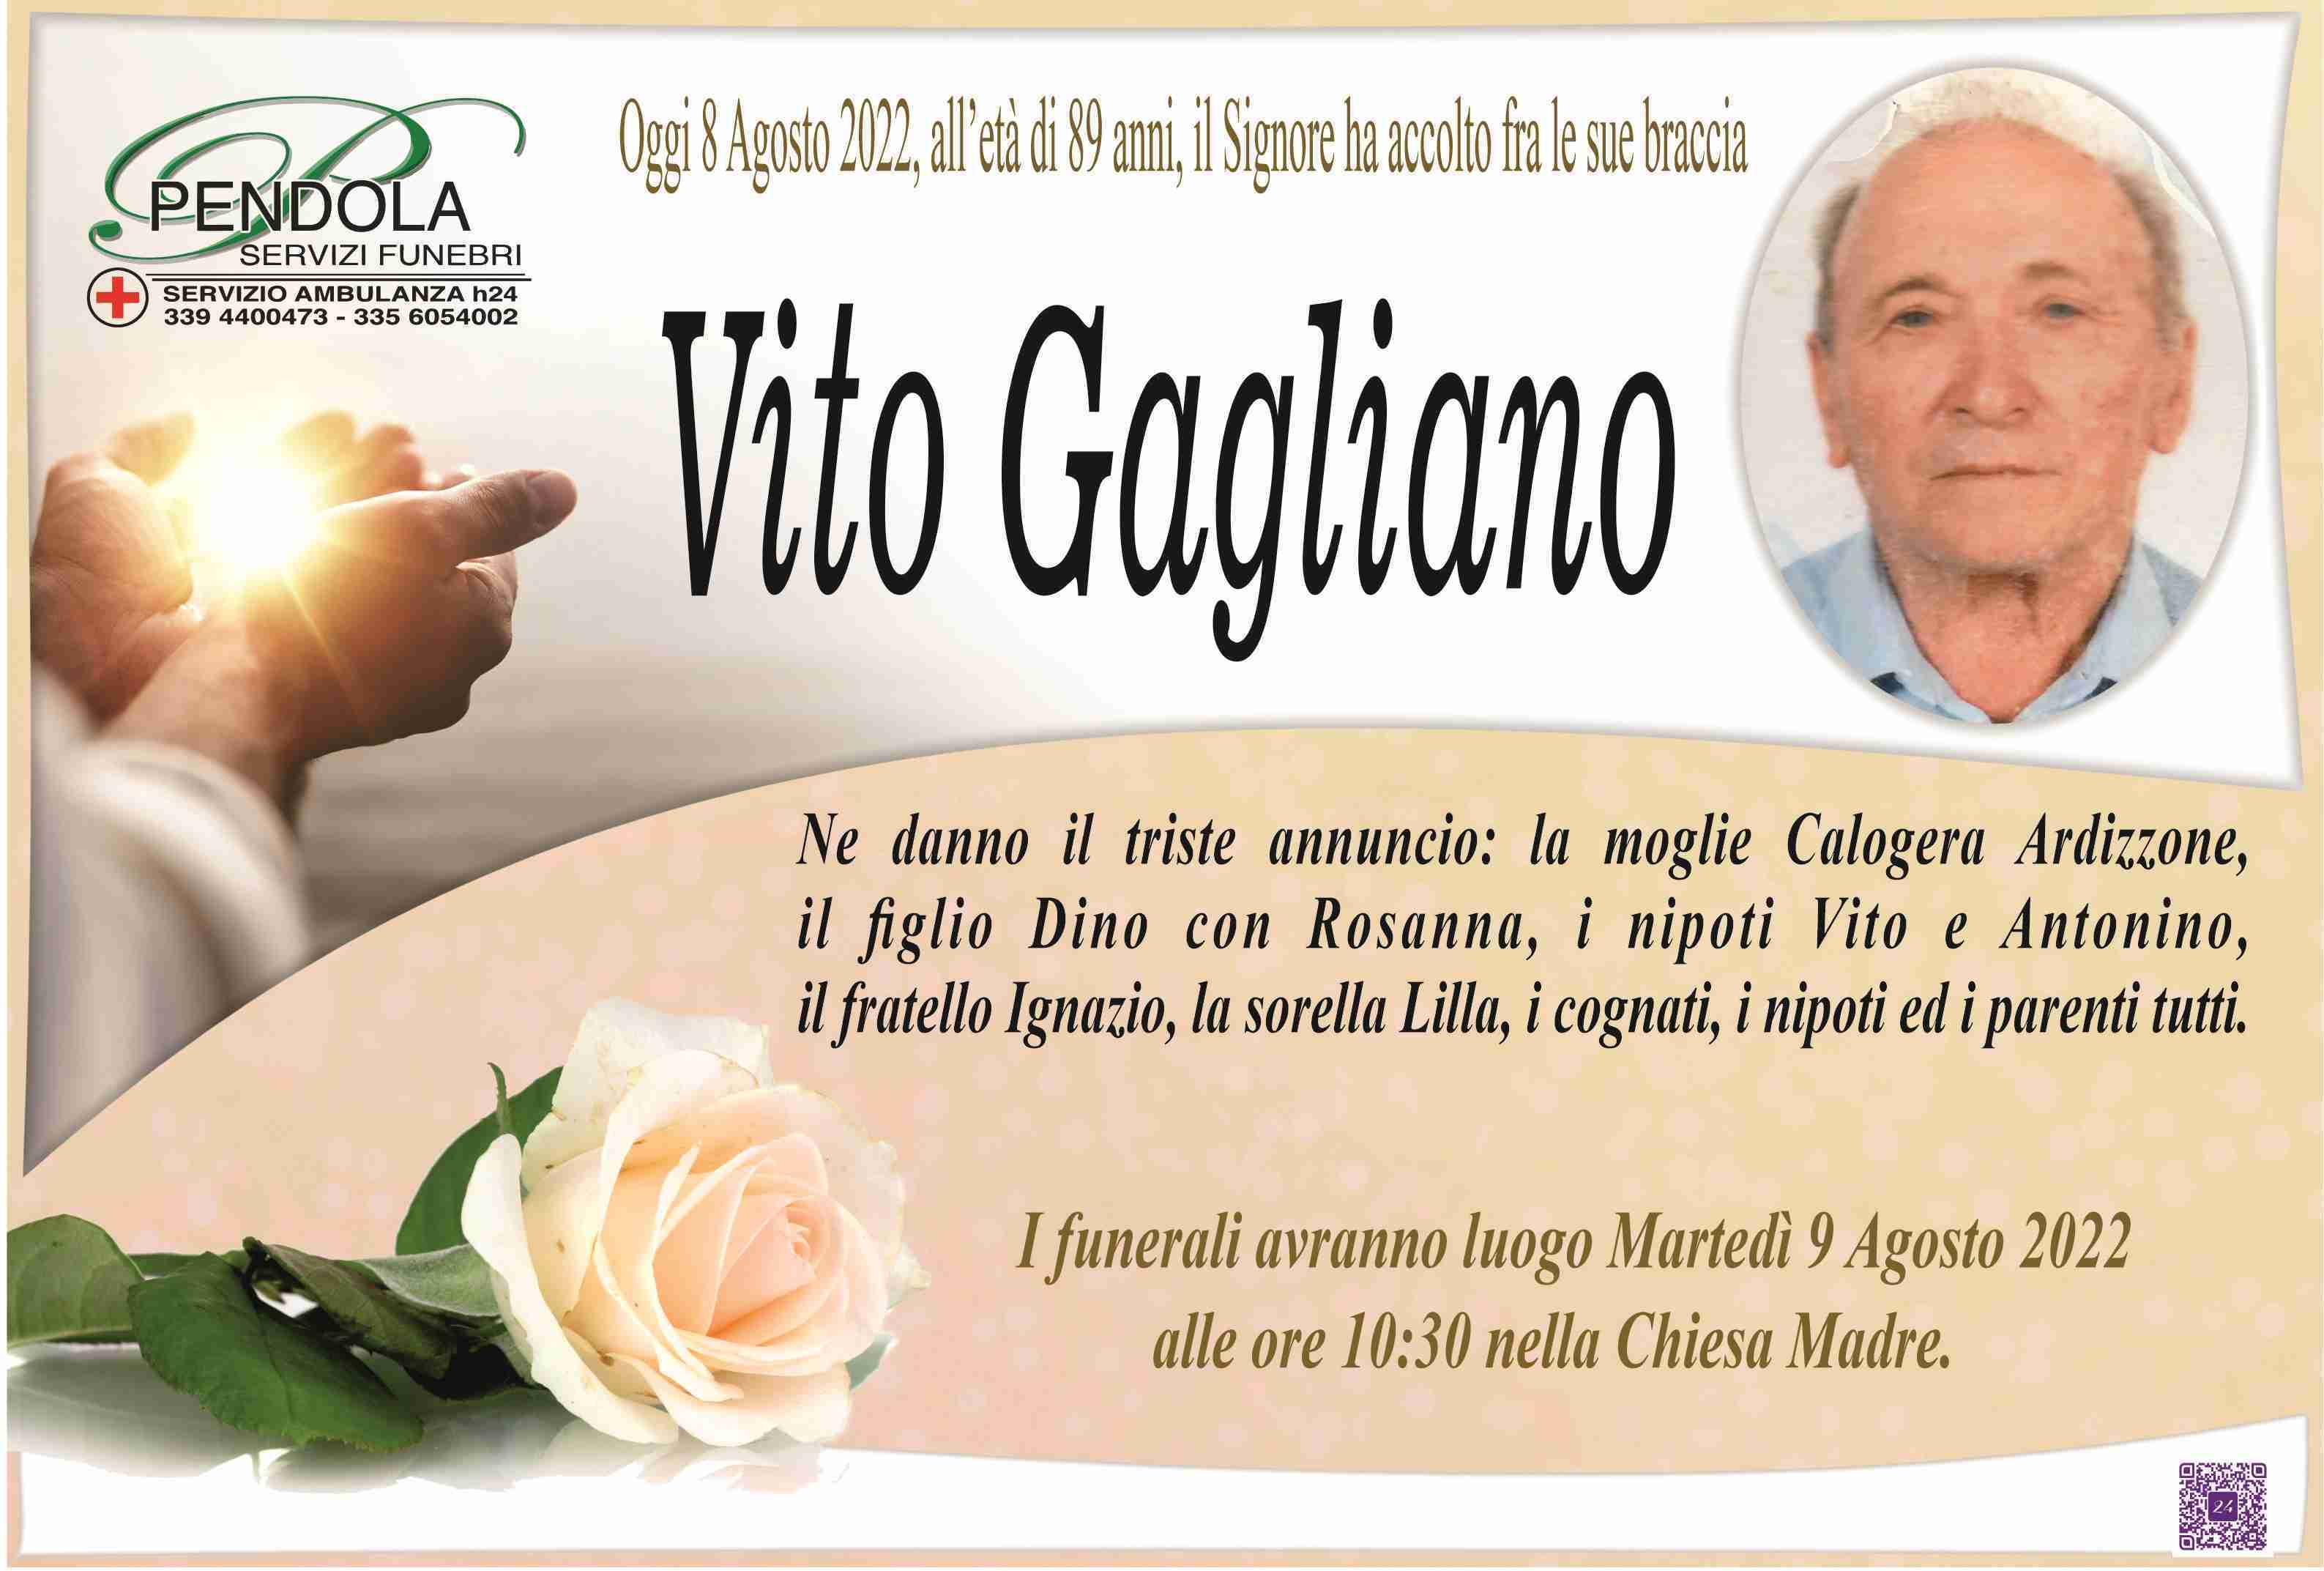 Vito Gagliano